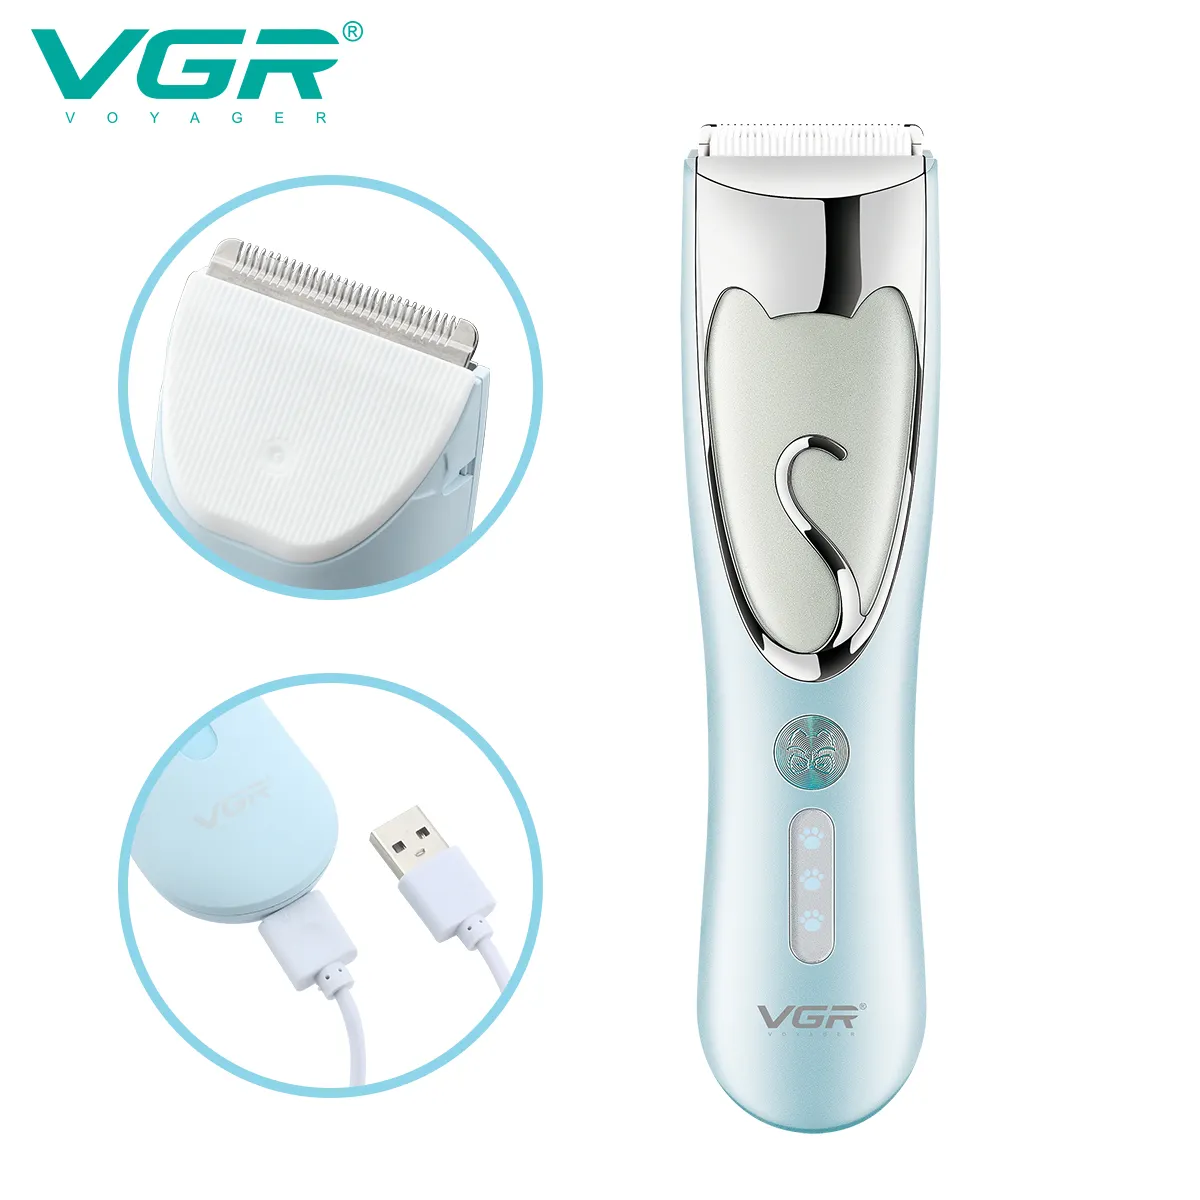 VGR V-203 Pet giyotin düşük gürültü profesyonel ve ev düzeltici özel Pet saç USB şarj için su geçirmez IPX7